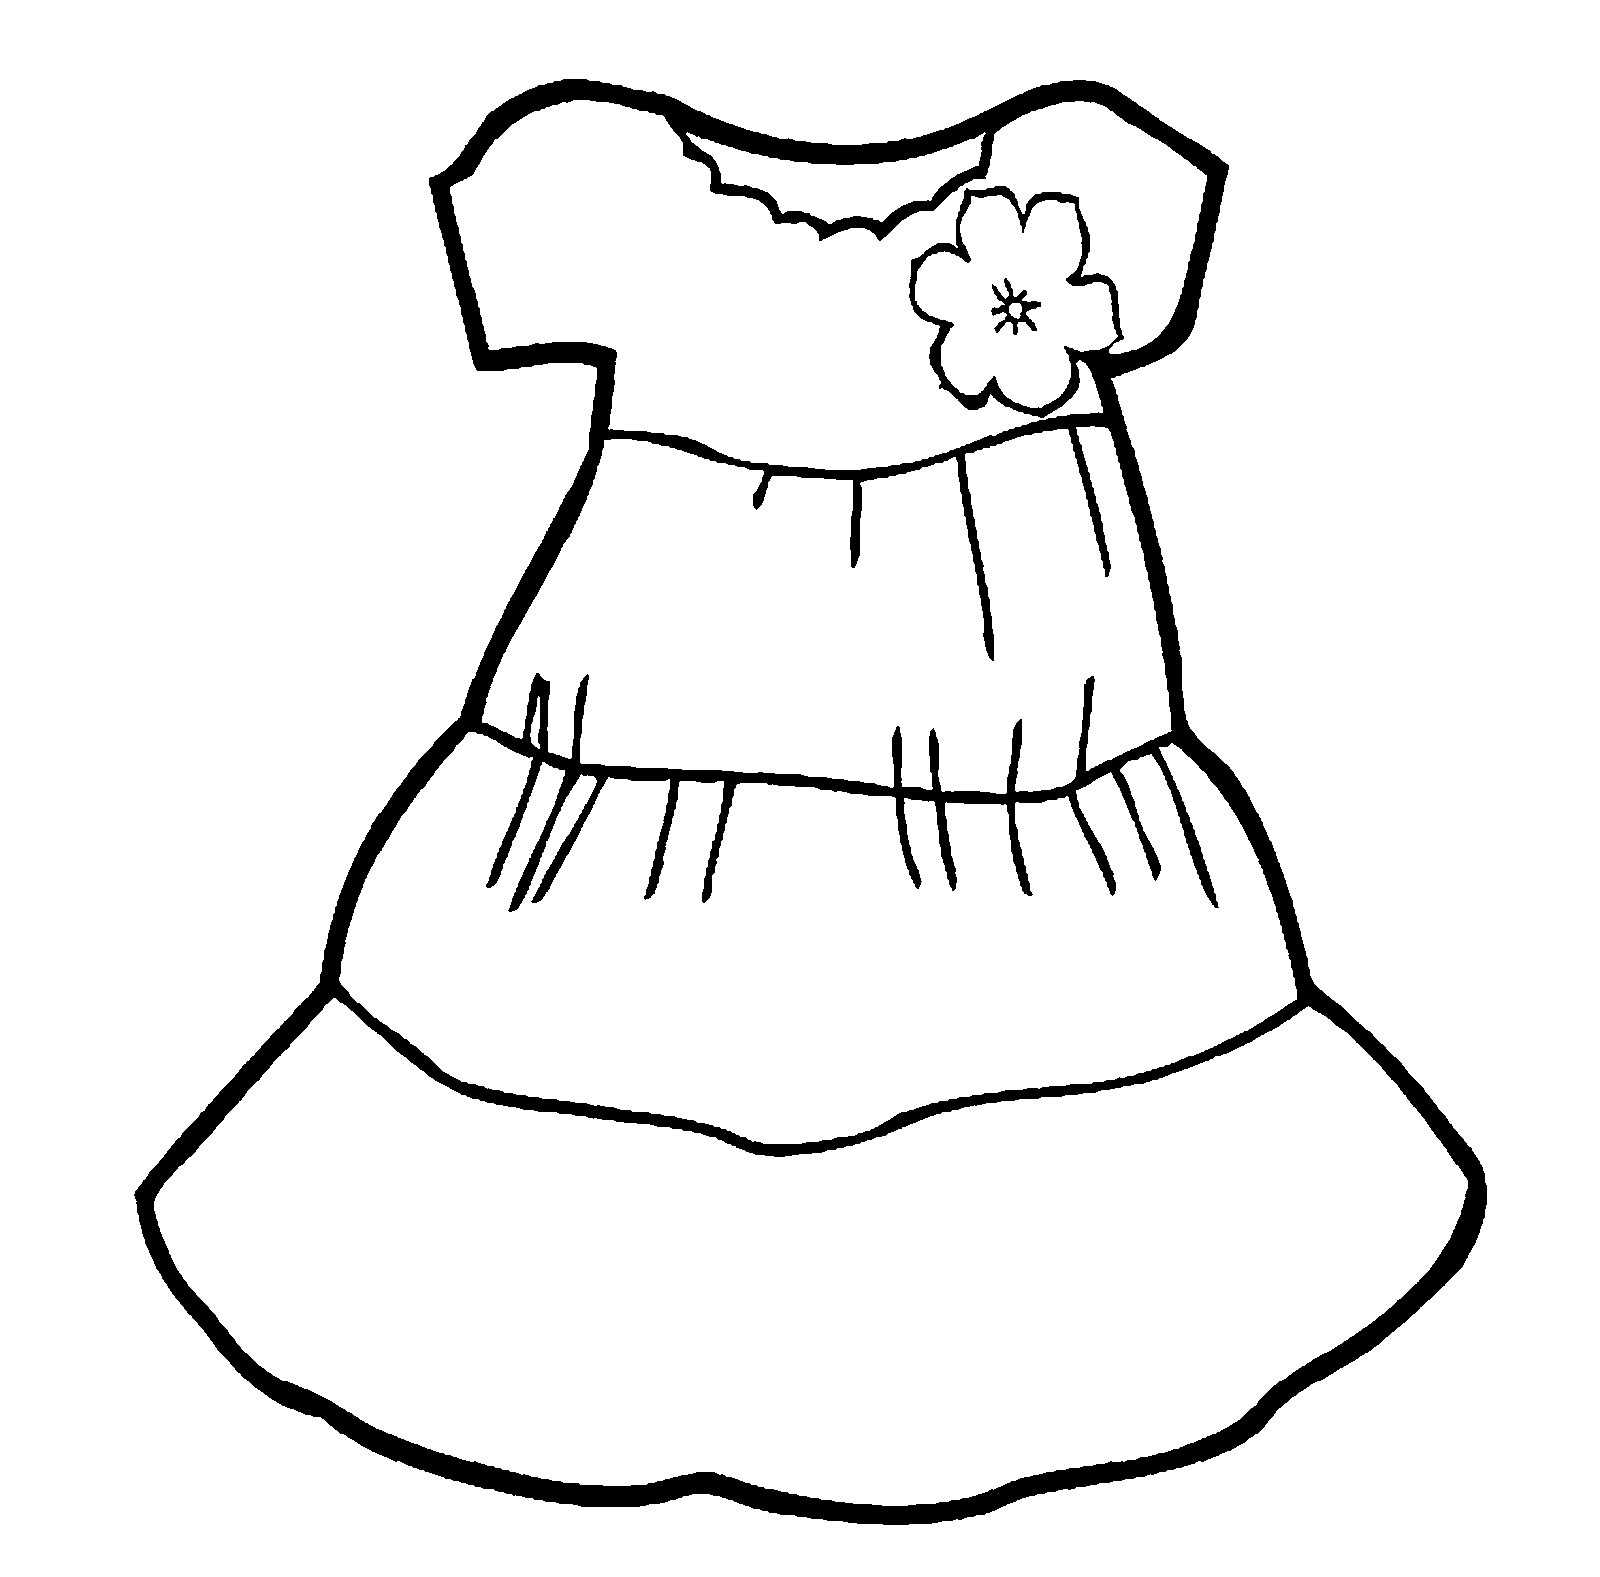 Бумажная кукла с набором одежды для вырезания (распечатать)